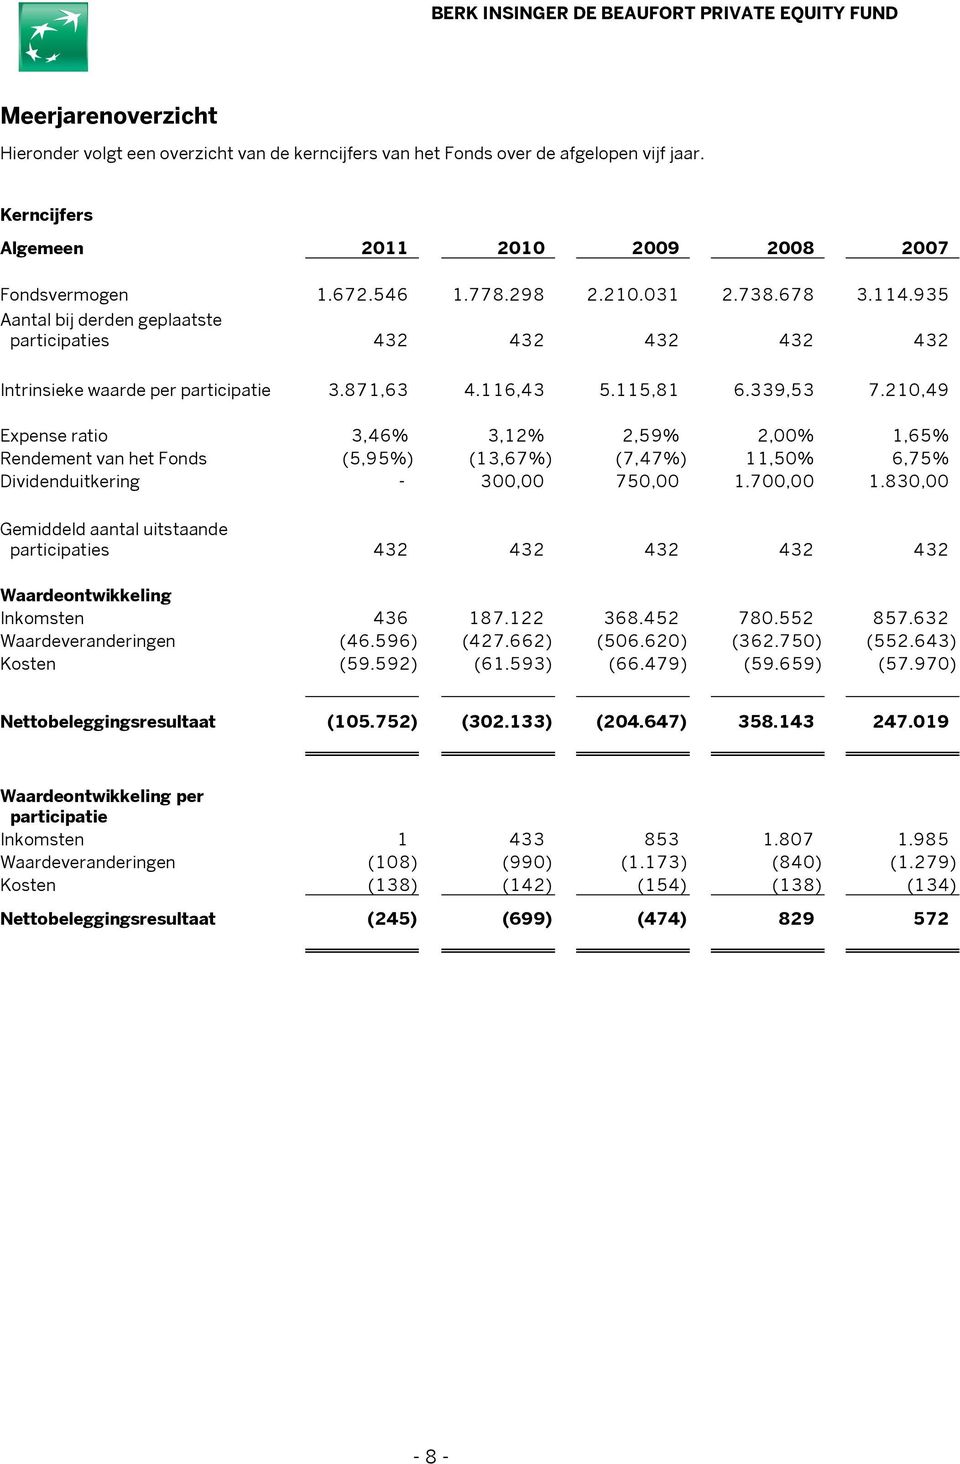 210,49 Expense ratio 3,46% 3,12% 2,59% 2,00% 1,65% Rendement van het Fonds (5,95%) (13,67%) (7,47%) 11,50% 6,75% Dividenduitkering - 300,00 750,00 1.700,00 1.